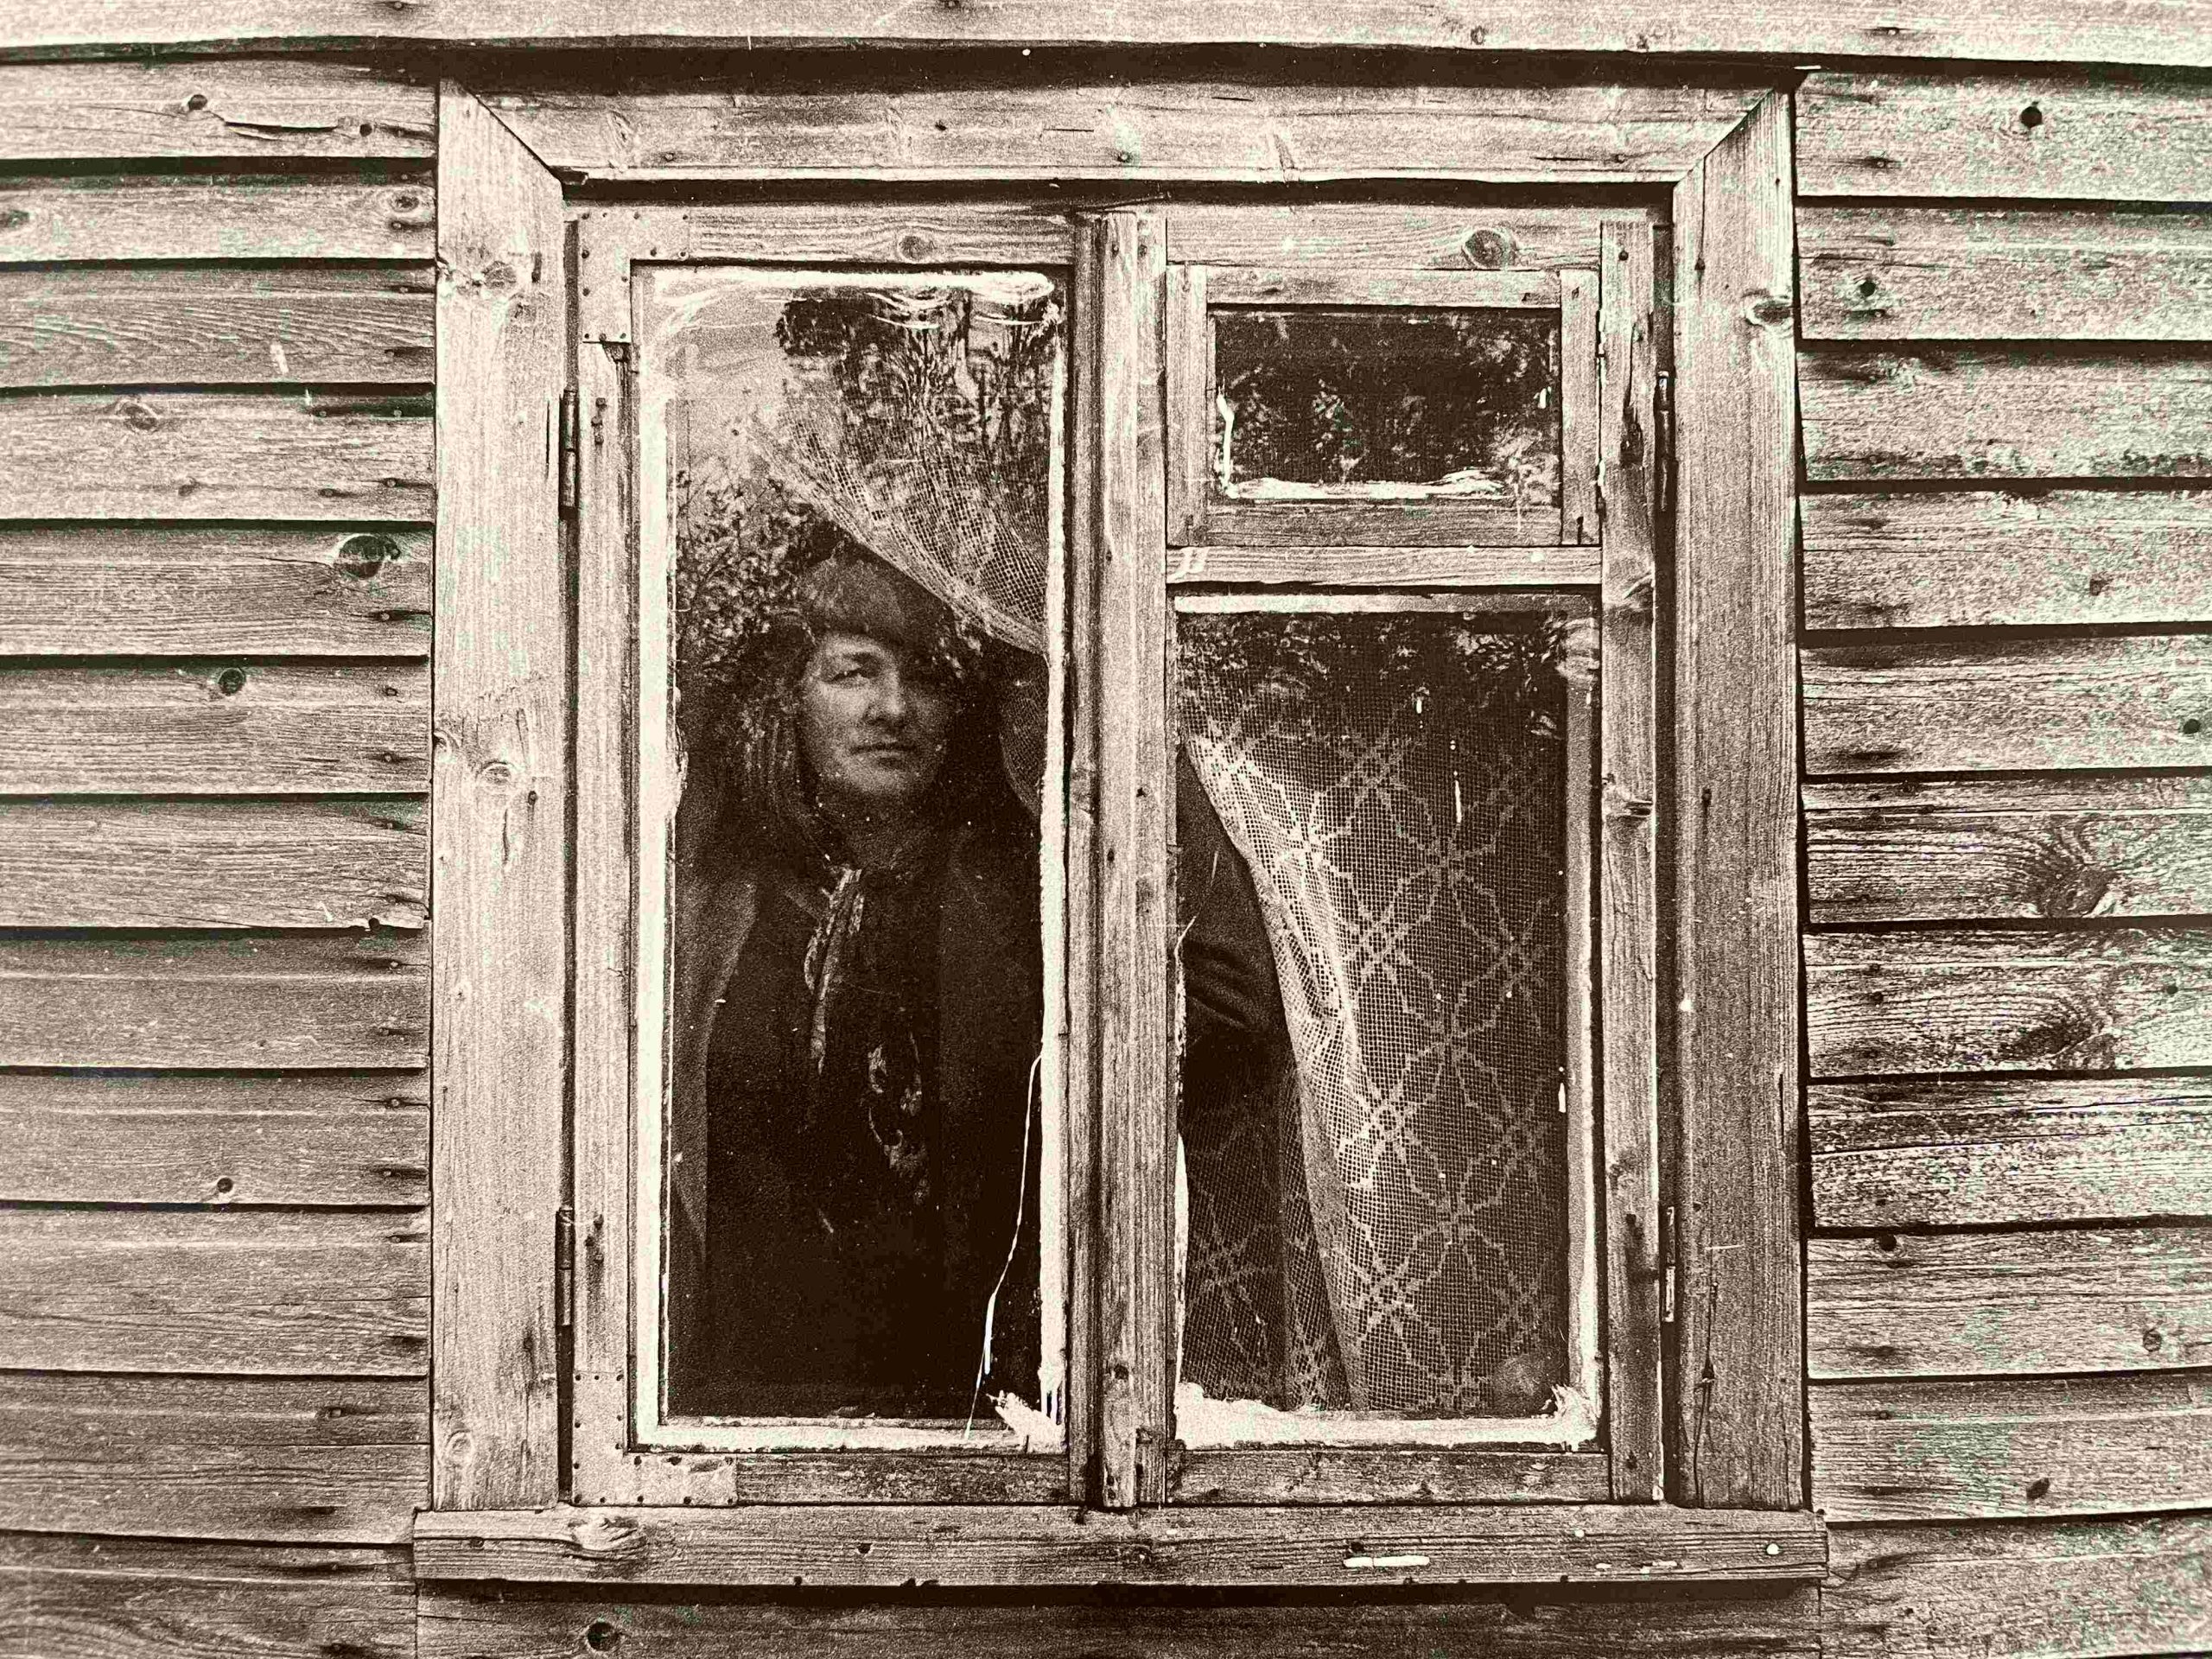 Pro vaikystės langą… Pumpučiai, Šiaulių r., 1986 m. R. Rakausko nuotrauka.  MLLM GEK P24521